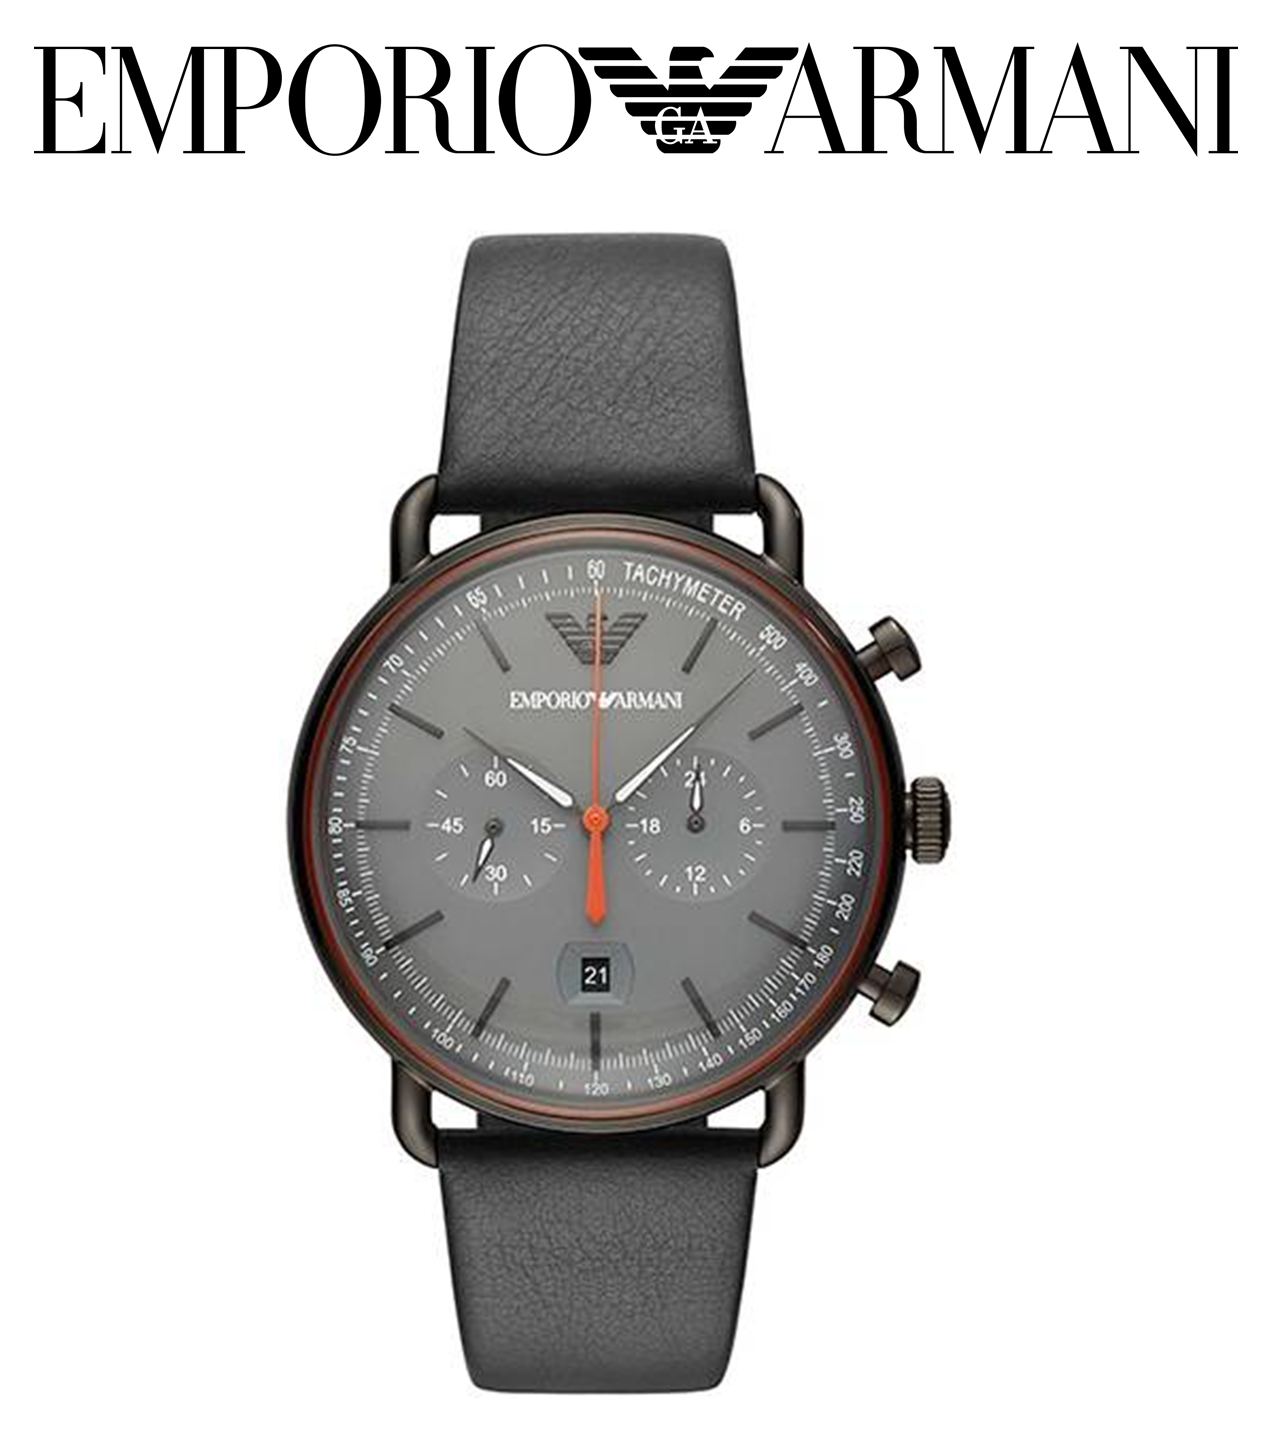 EMPORIO ARMANI - pánske hodinky - Mod. AVIATOR - s koženým remienkom